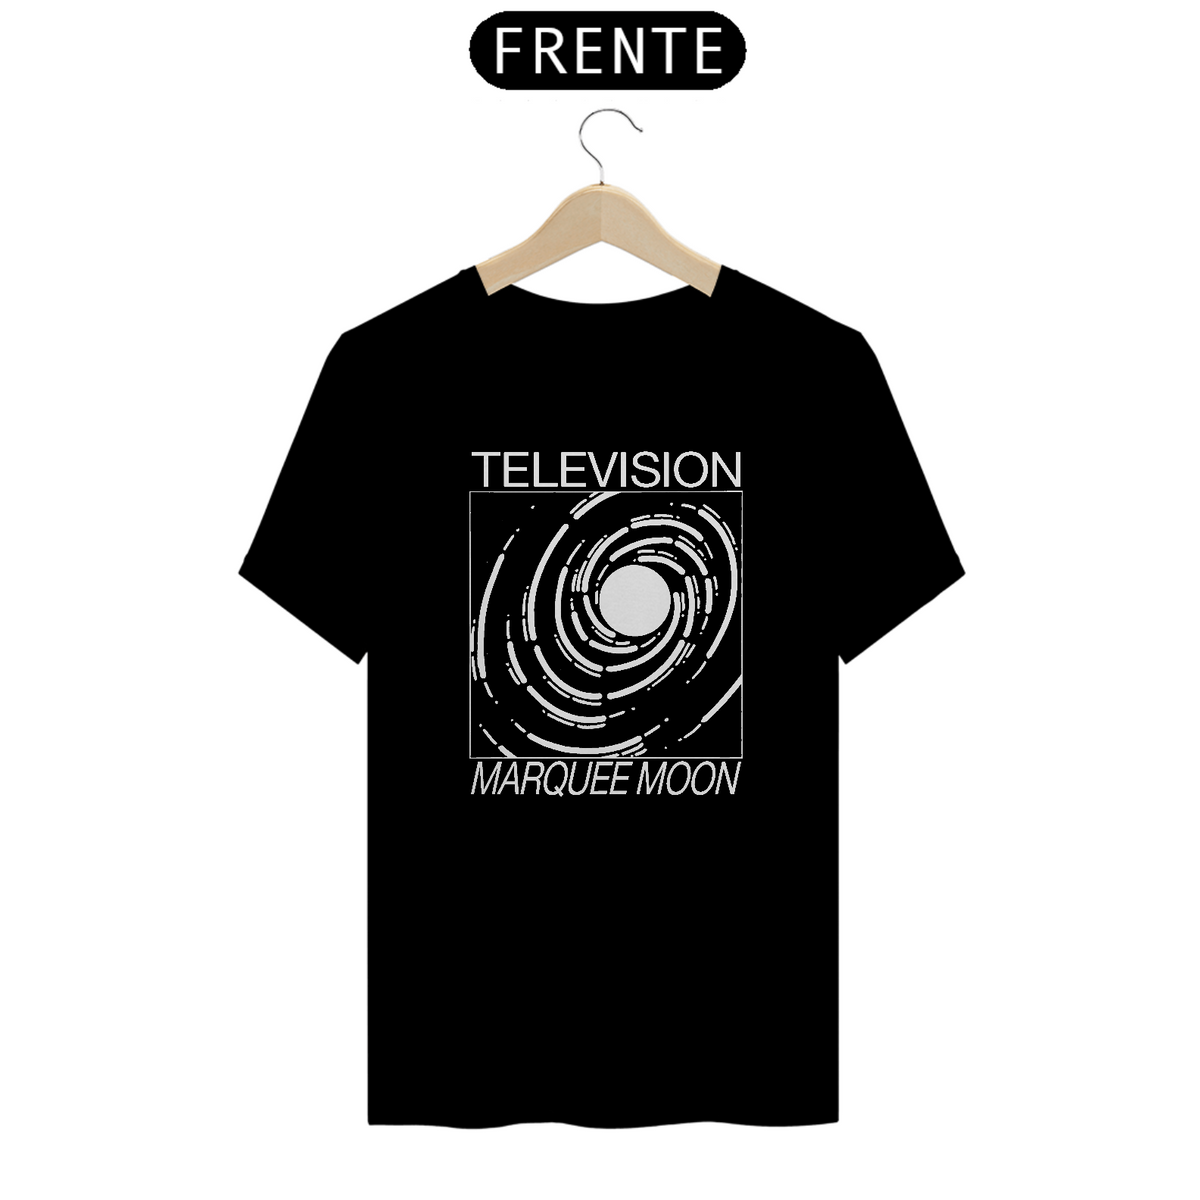 Nome do produto: Television - Marquee Moon